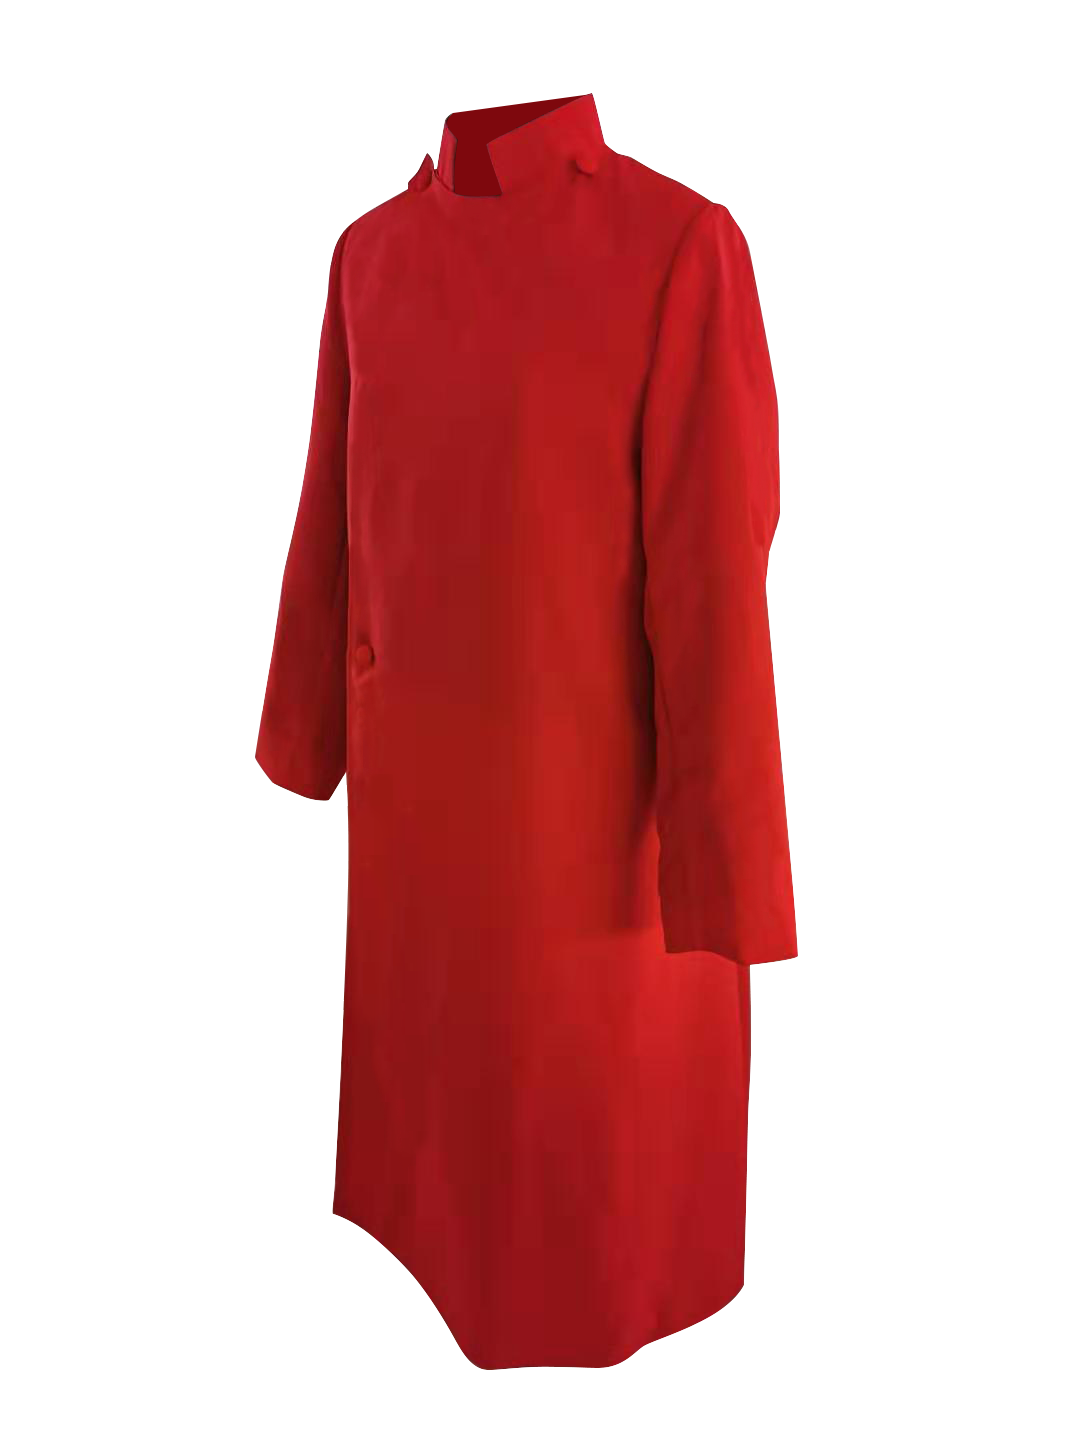 Custom Anglican Choir Cassock - 8 colors available - Church Choir Robes - ChoirBuy